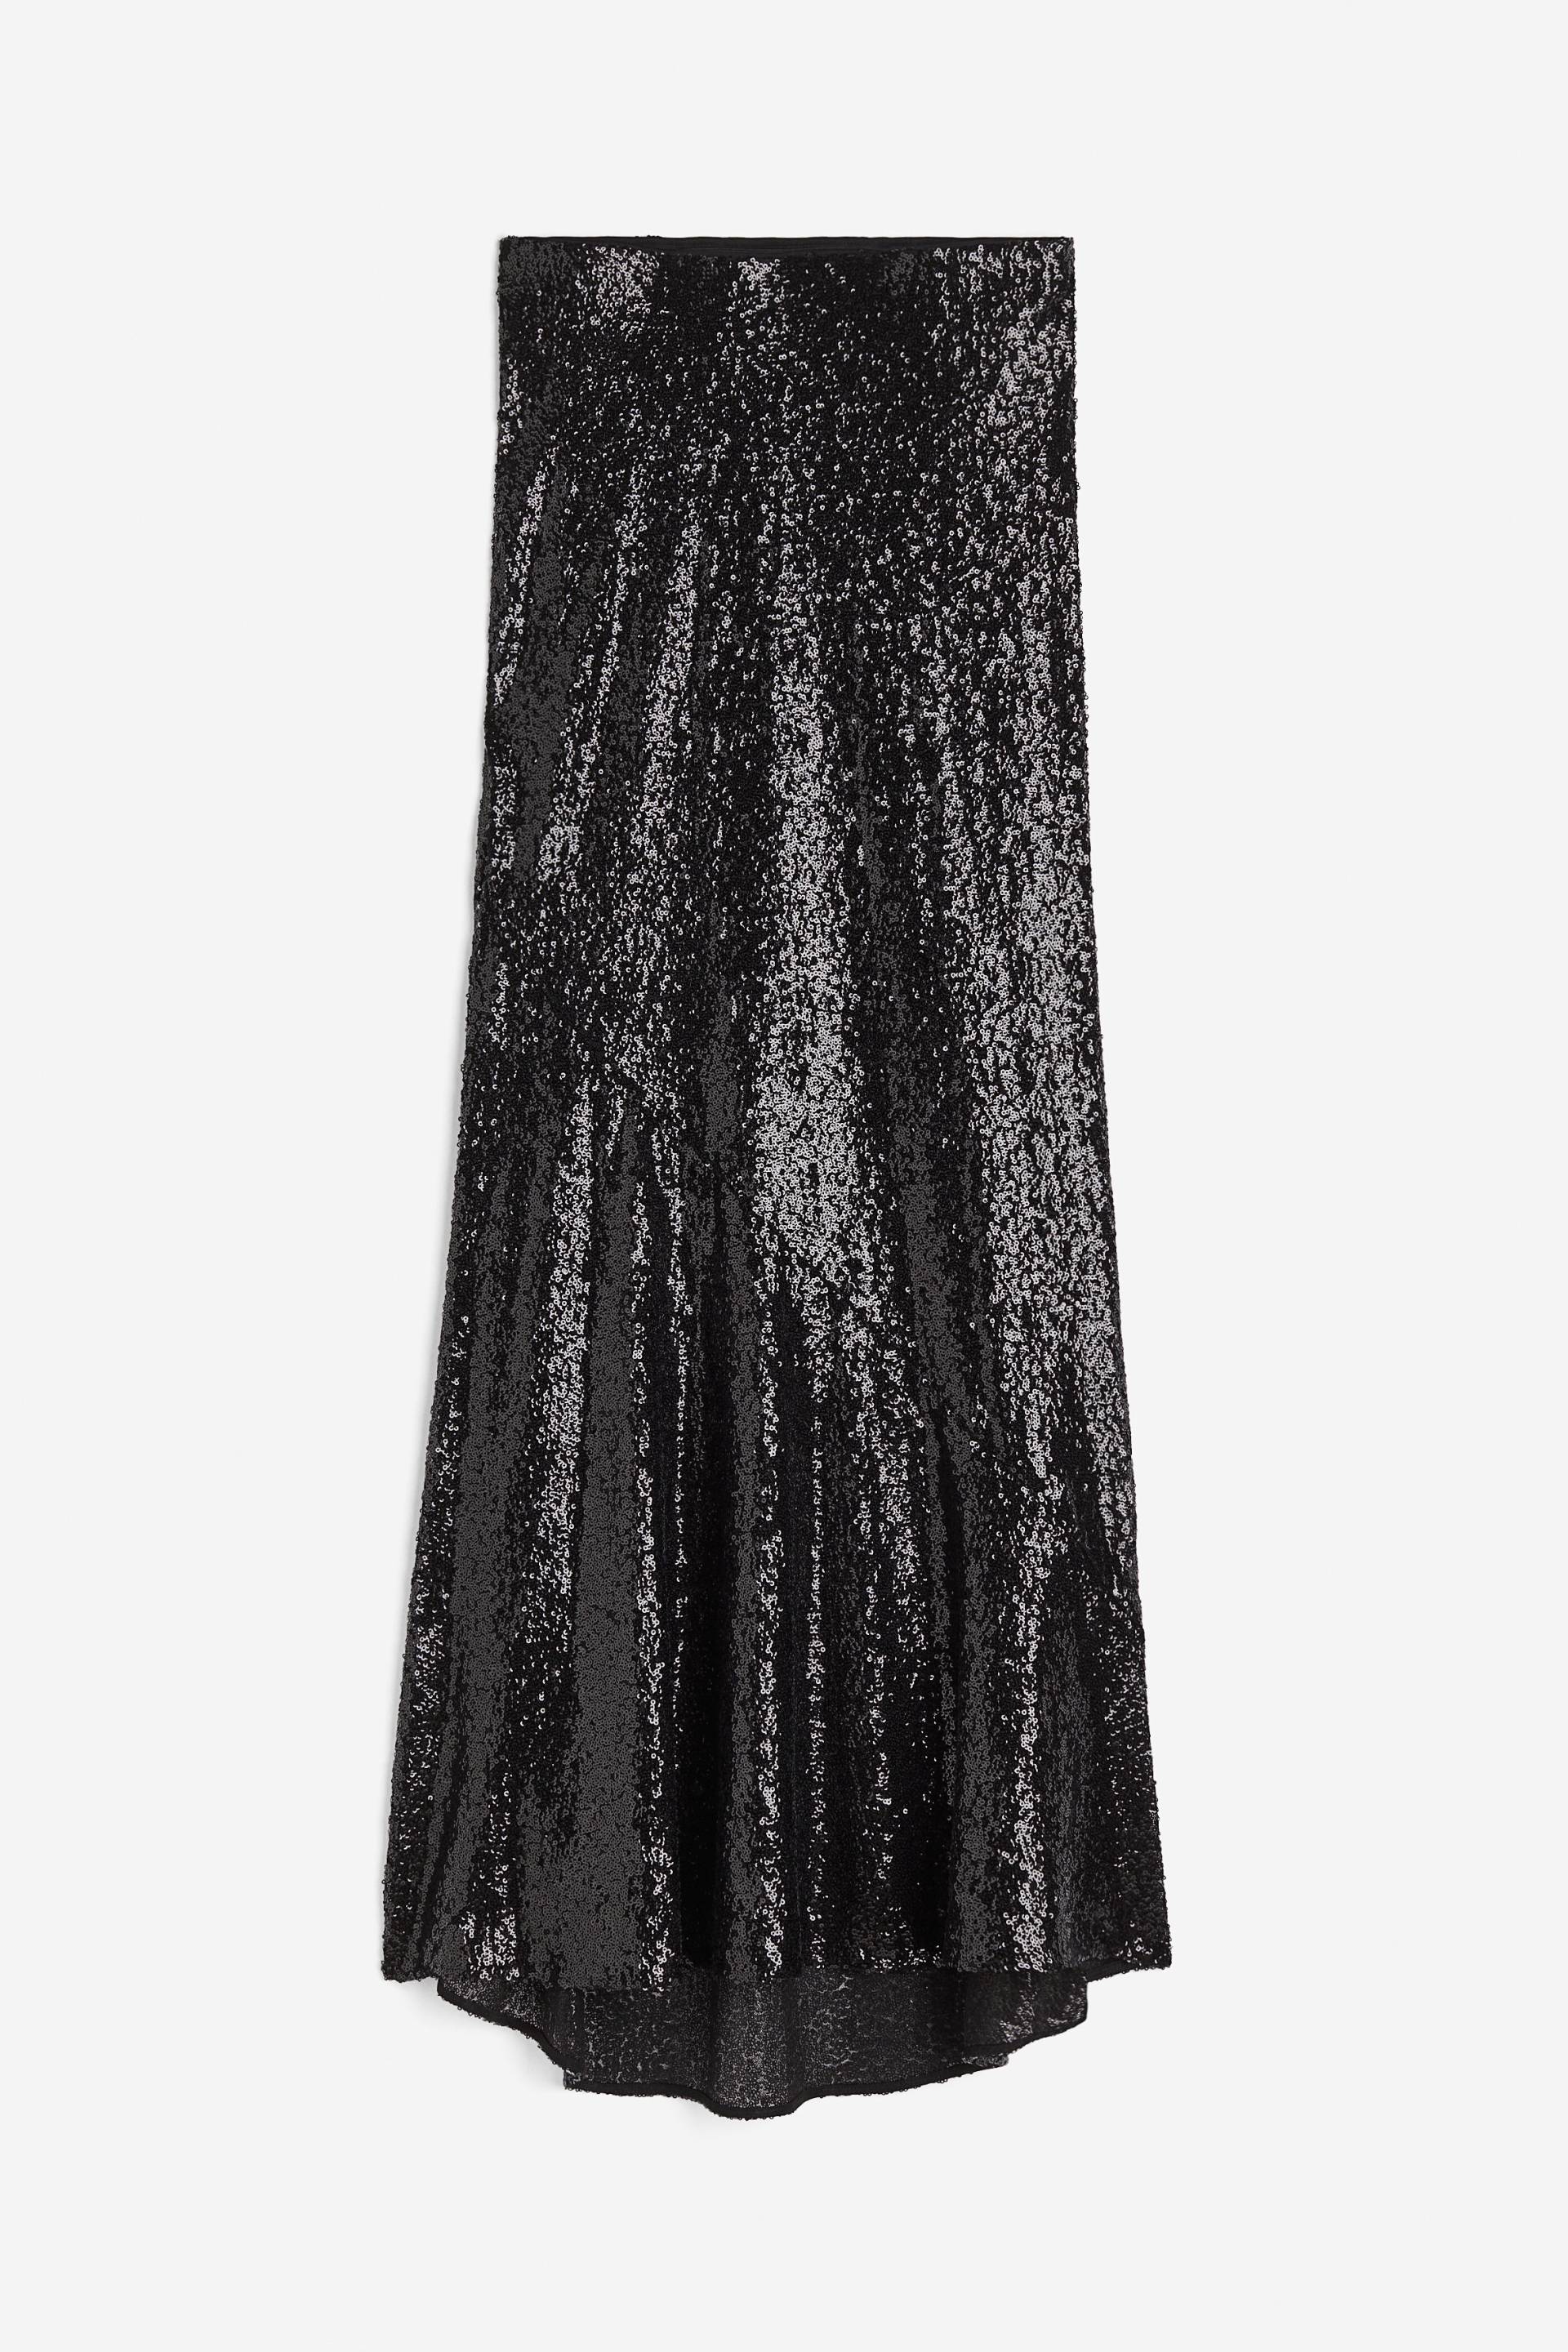 H&M Paillettenrock Schwarz, Röcke in Größe S. Farbe: Black von H&M